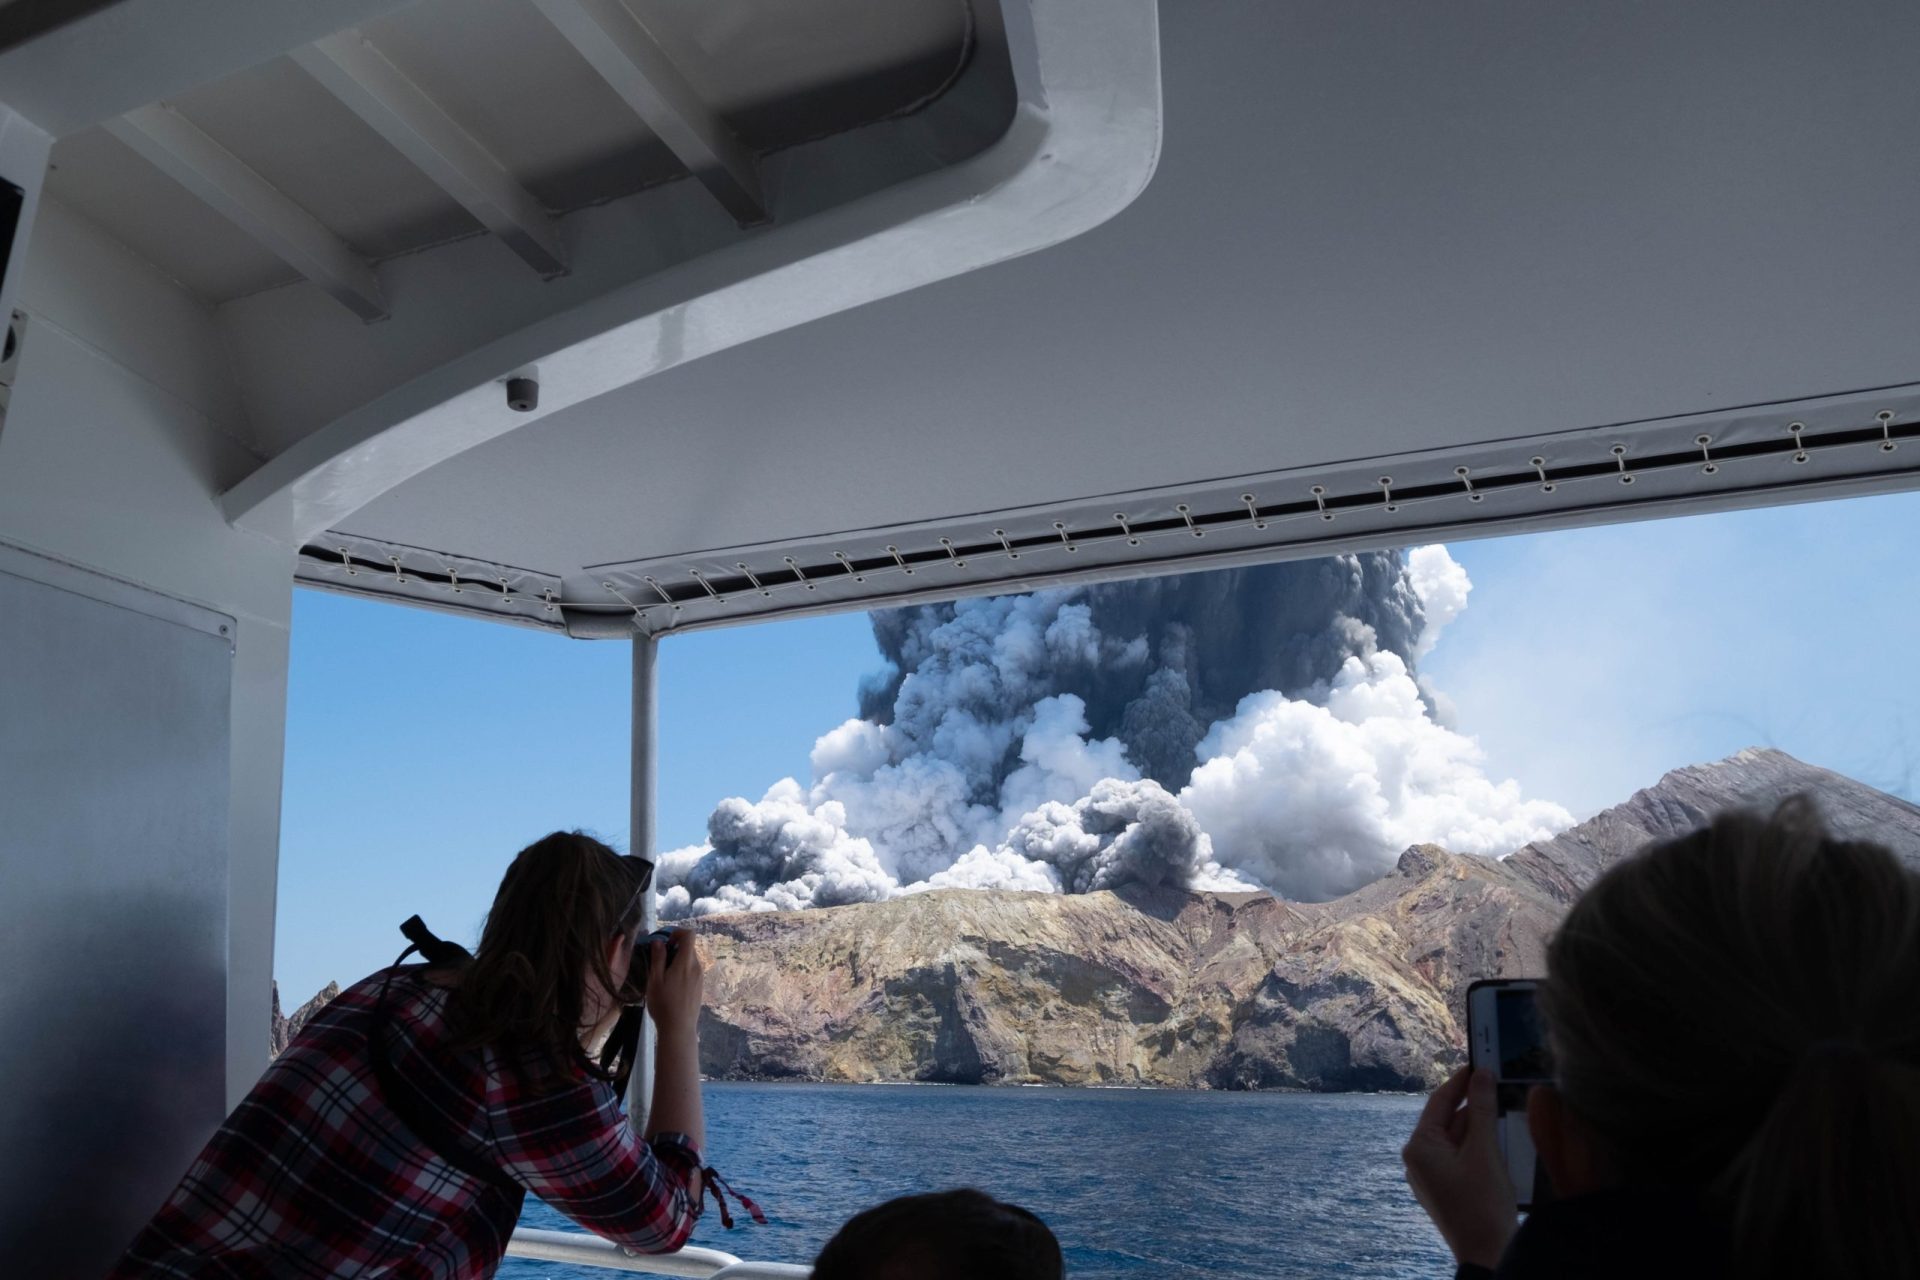 Imagens mostram momento em que turistas são surpreendidos com vulcão a entrar em erupção | Vídeo